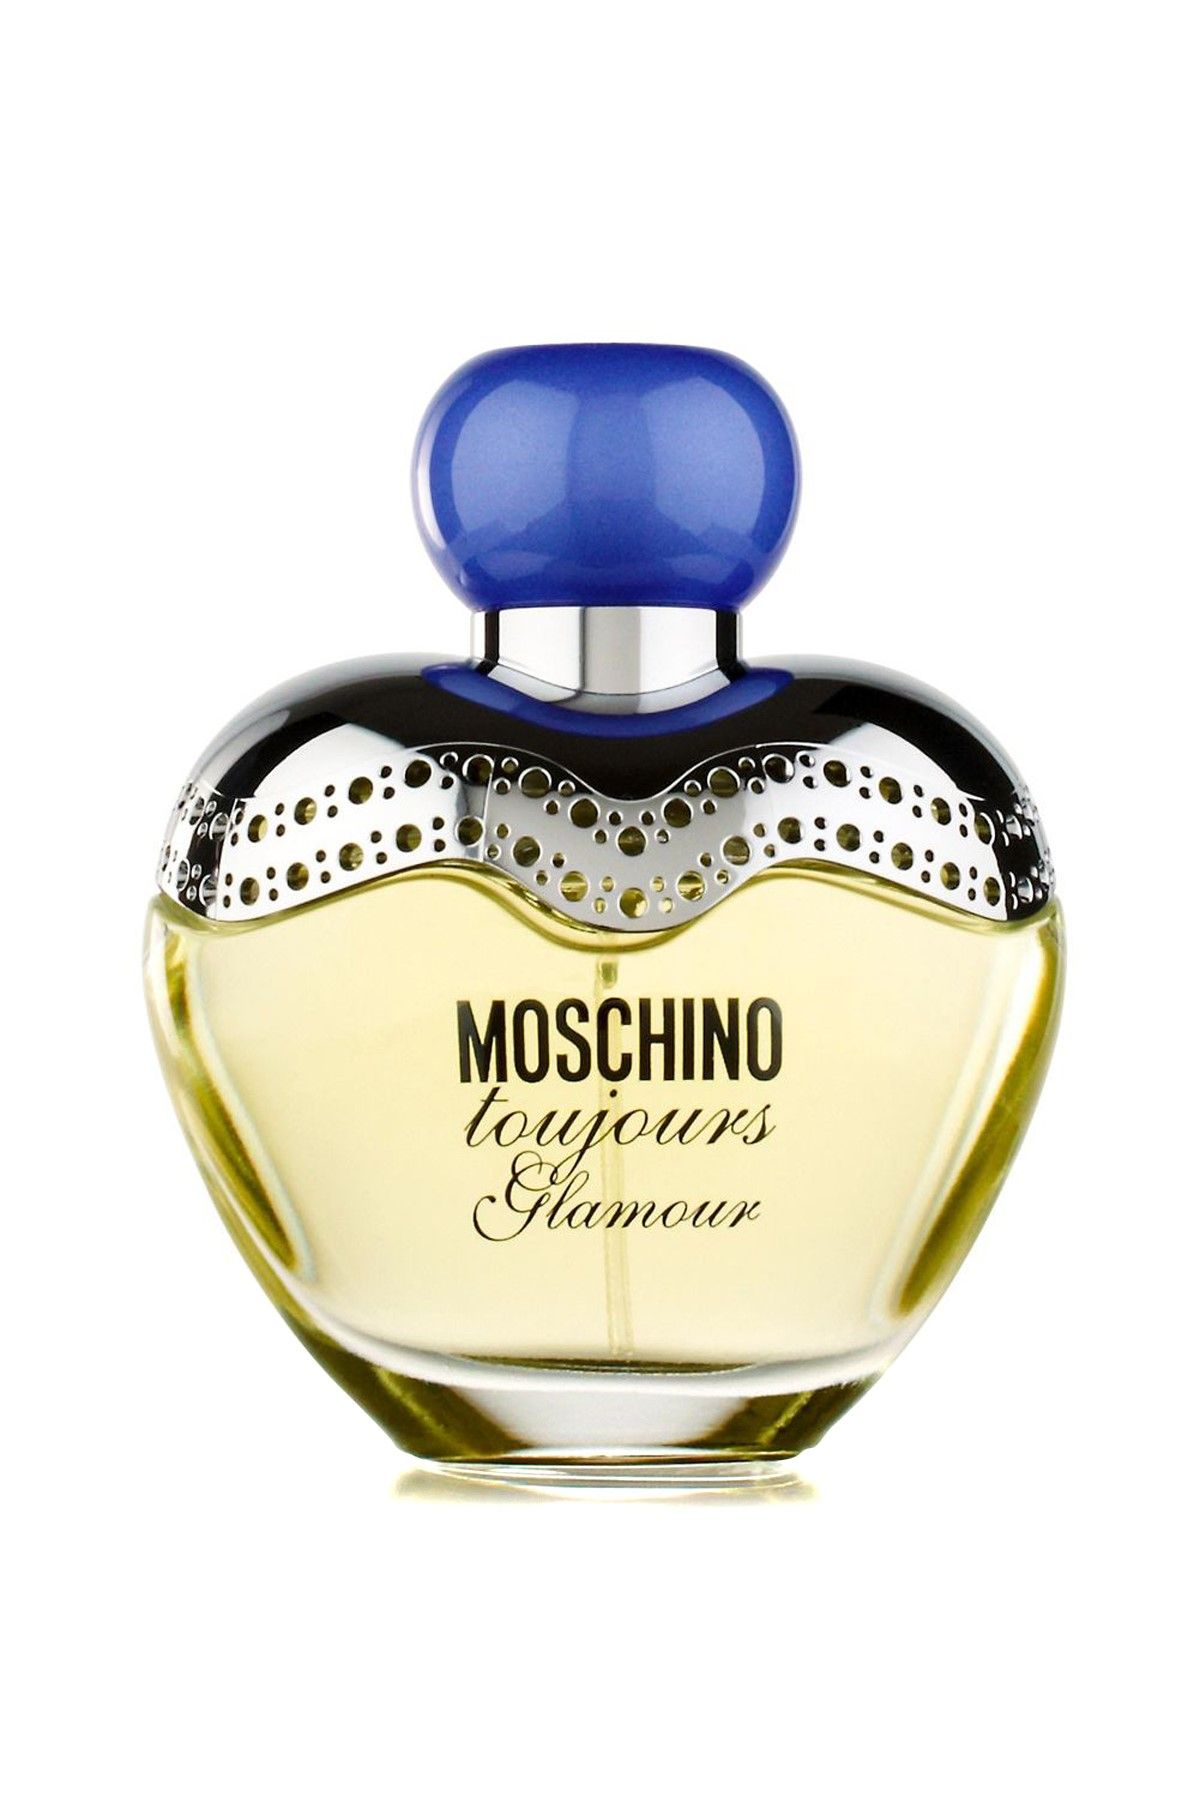 Moschino Tourjours Glamour Edt 50 ml Kadın Parfümü 8011003100026